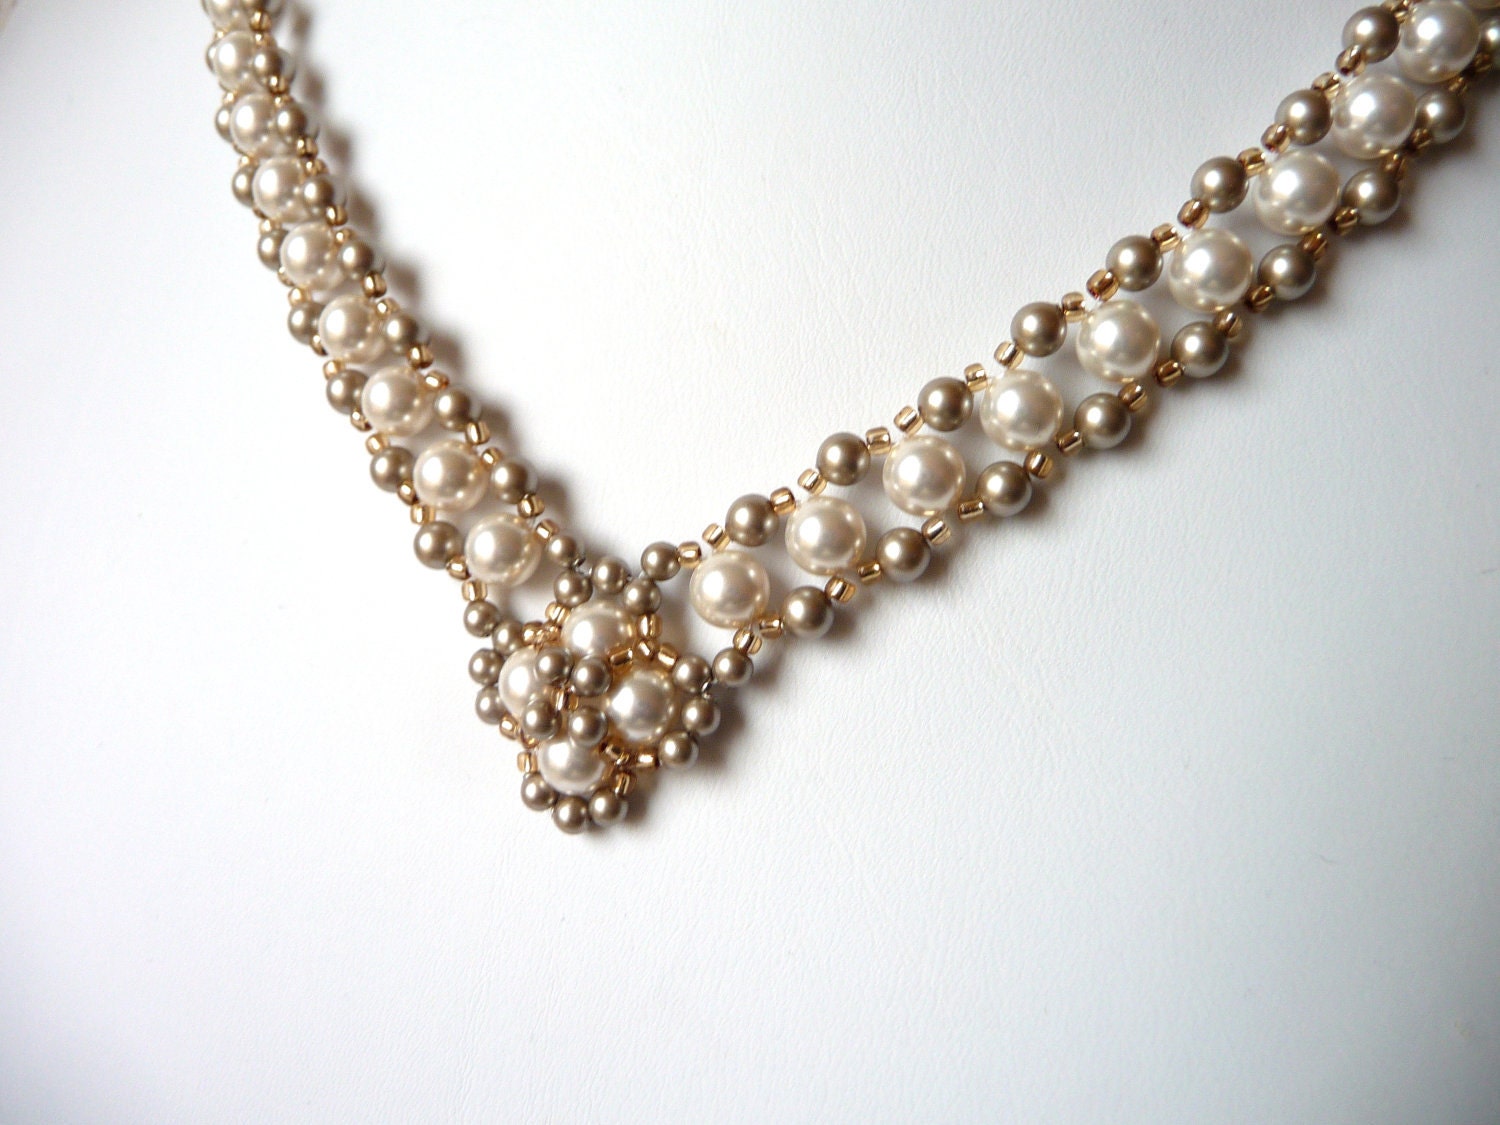 Swarovski Pearl & Gold Necklace Wedding Bridal Jewelry